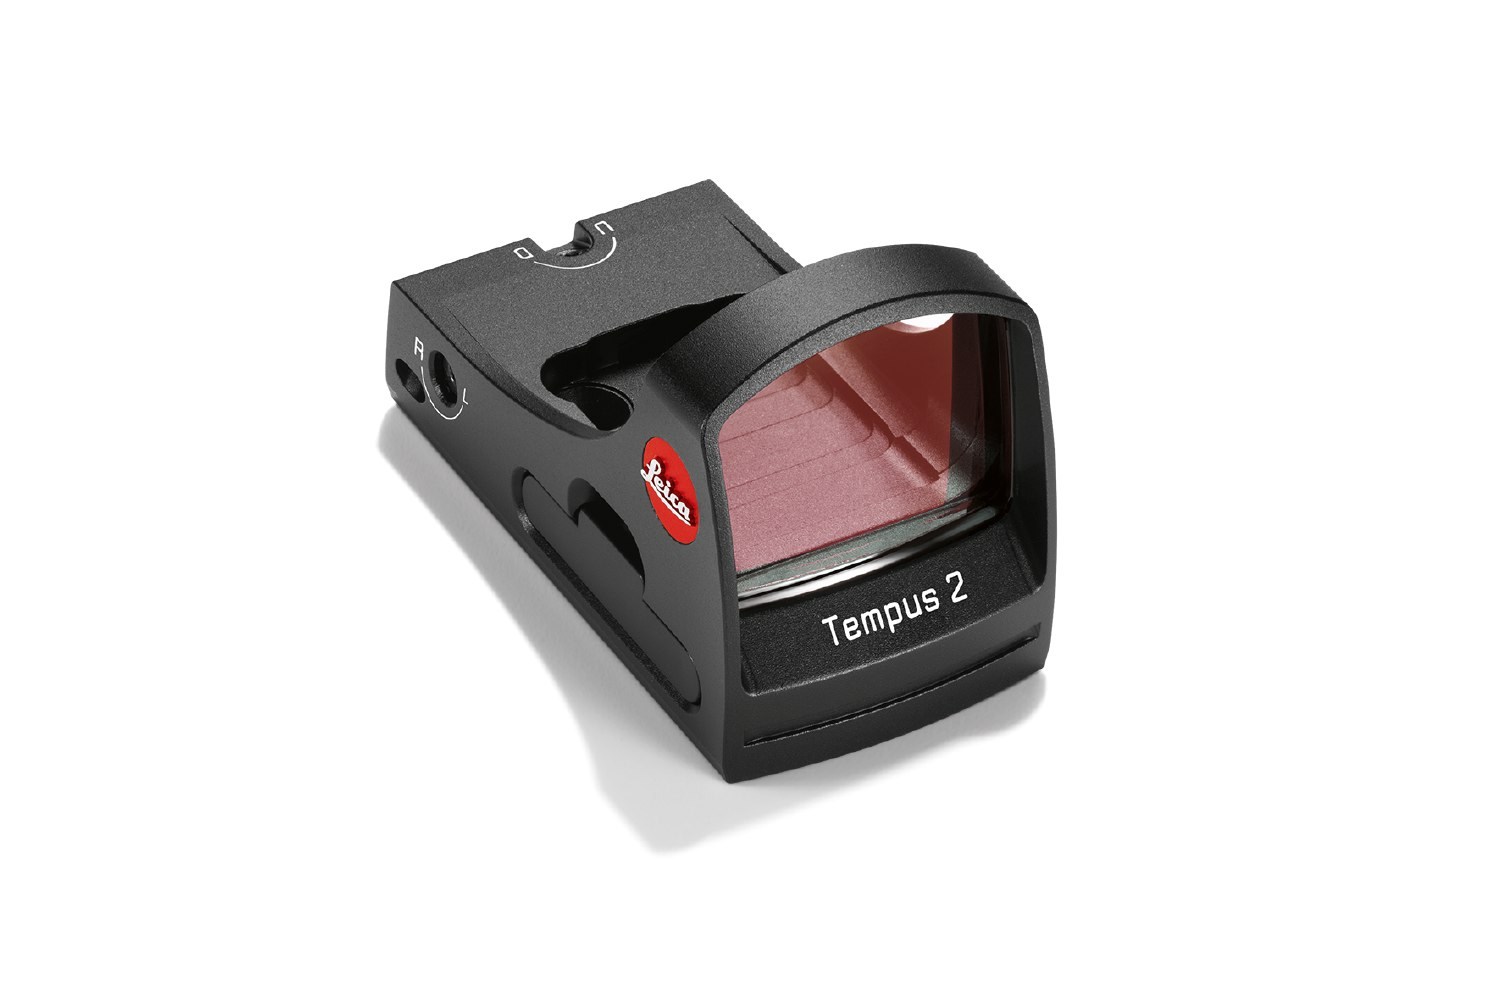 Leica Rotpunktvisier Tempus 2 extrem robustes Rotpunkvisier mit hochfeinem Leuchtpunkt und Einblickverhalten 